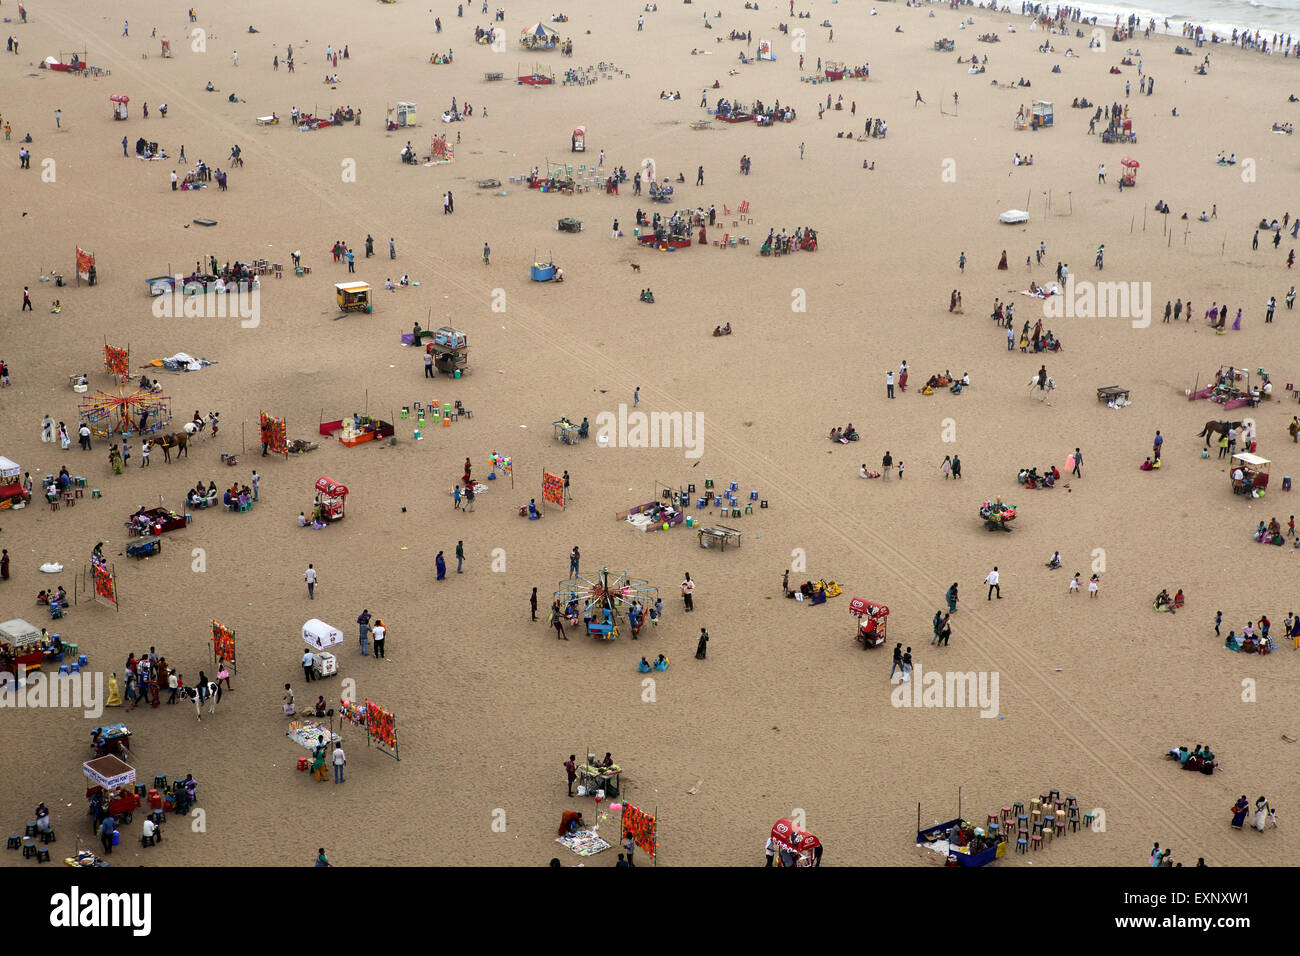 Crowd on beach in Chennai, India Stock Photo